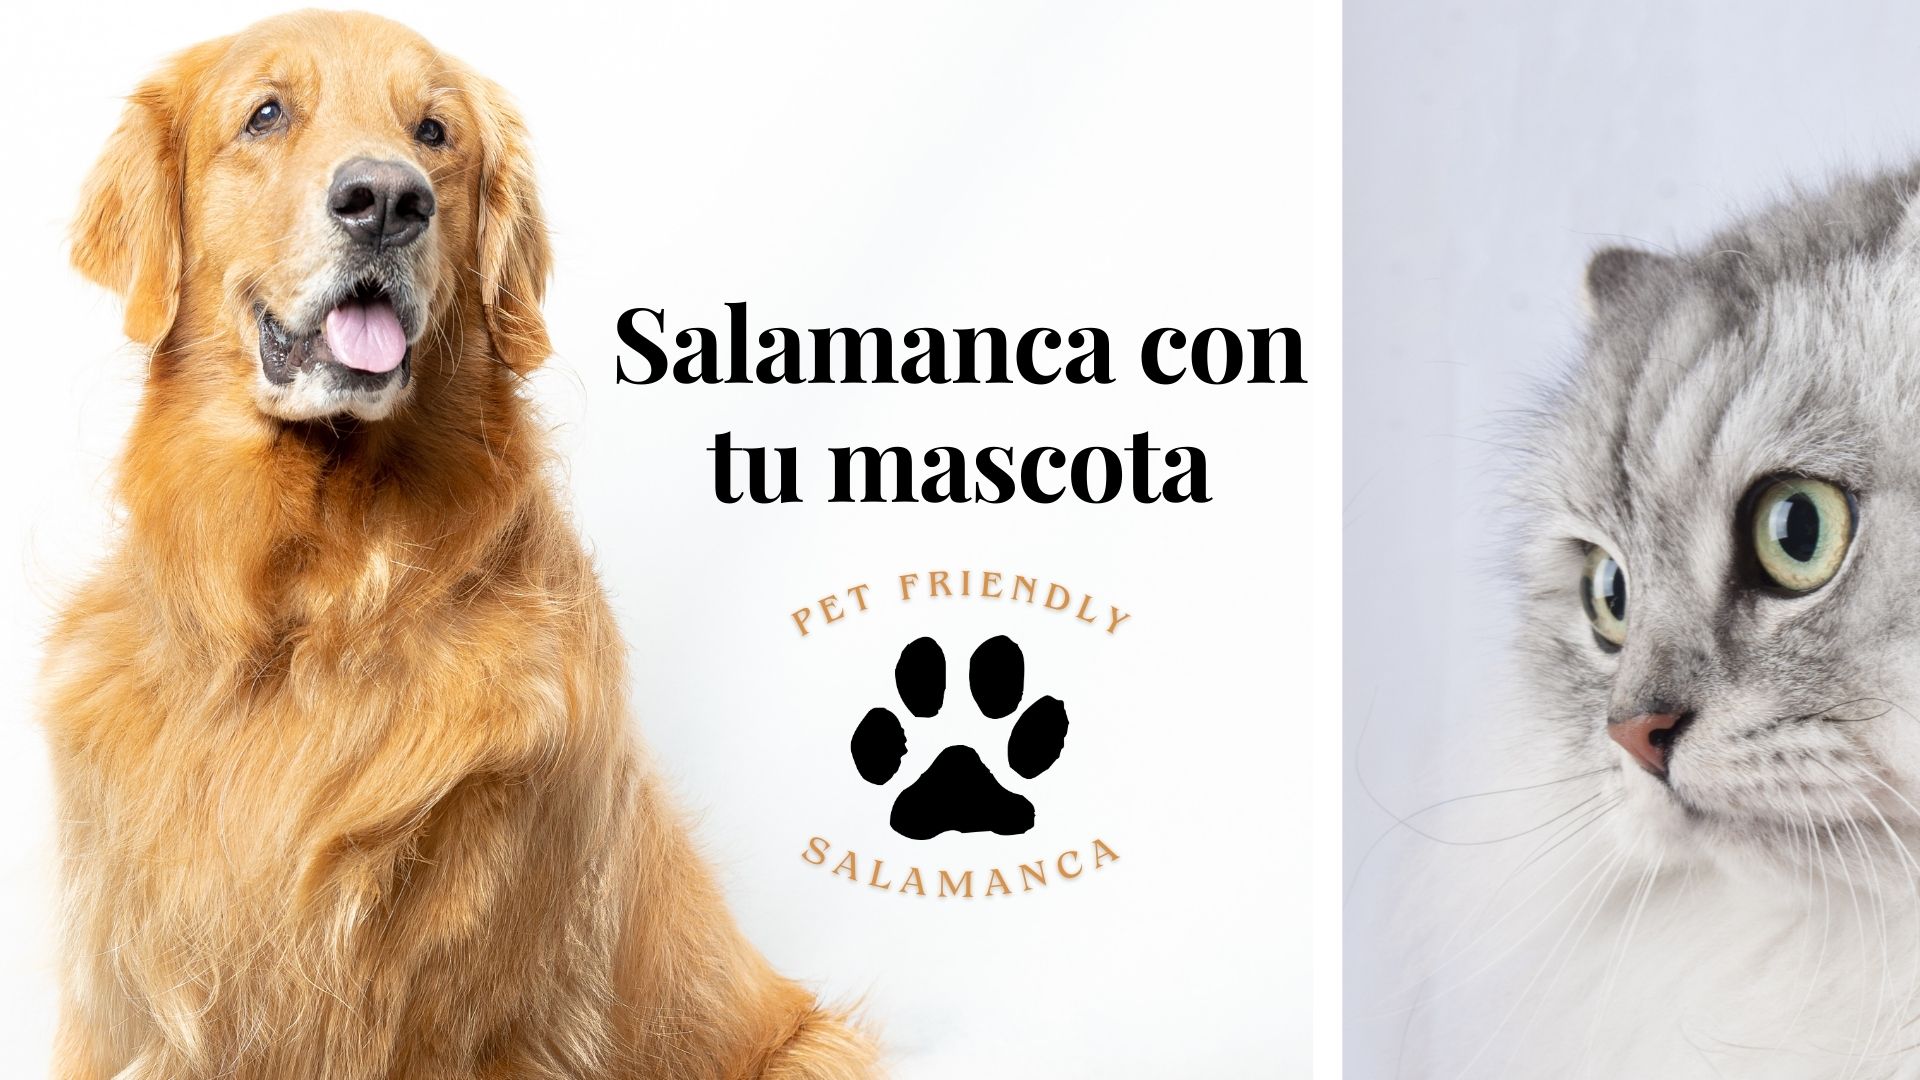 Salamanca con tu mascota